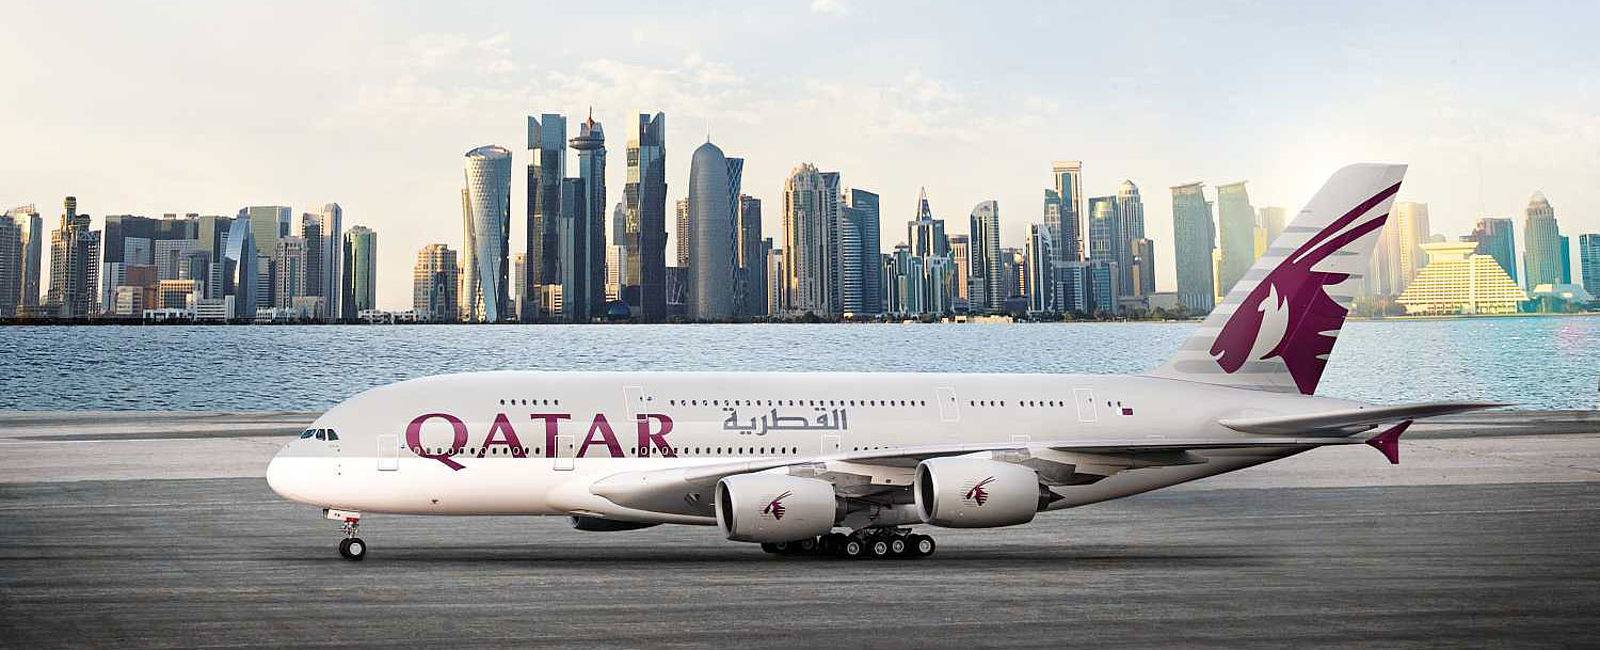 AIRLINE ANGEBOTE
 Tolle Sommer-Angebote bei Qatar Airways 
